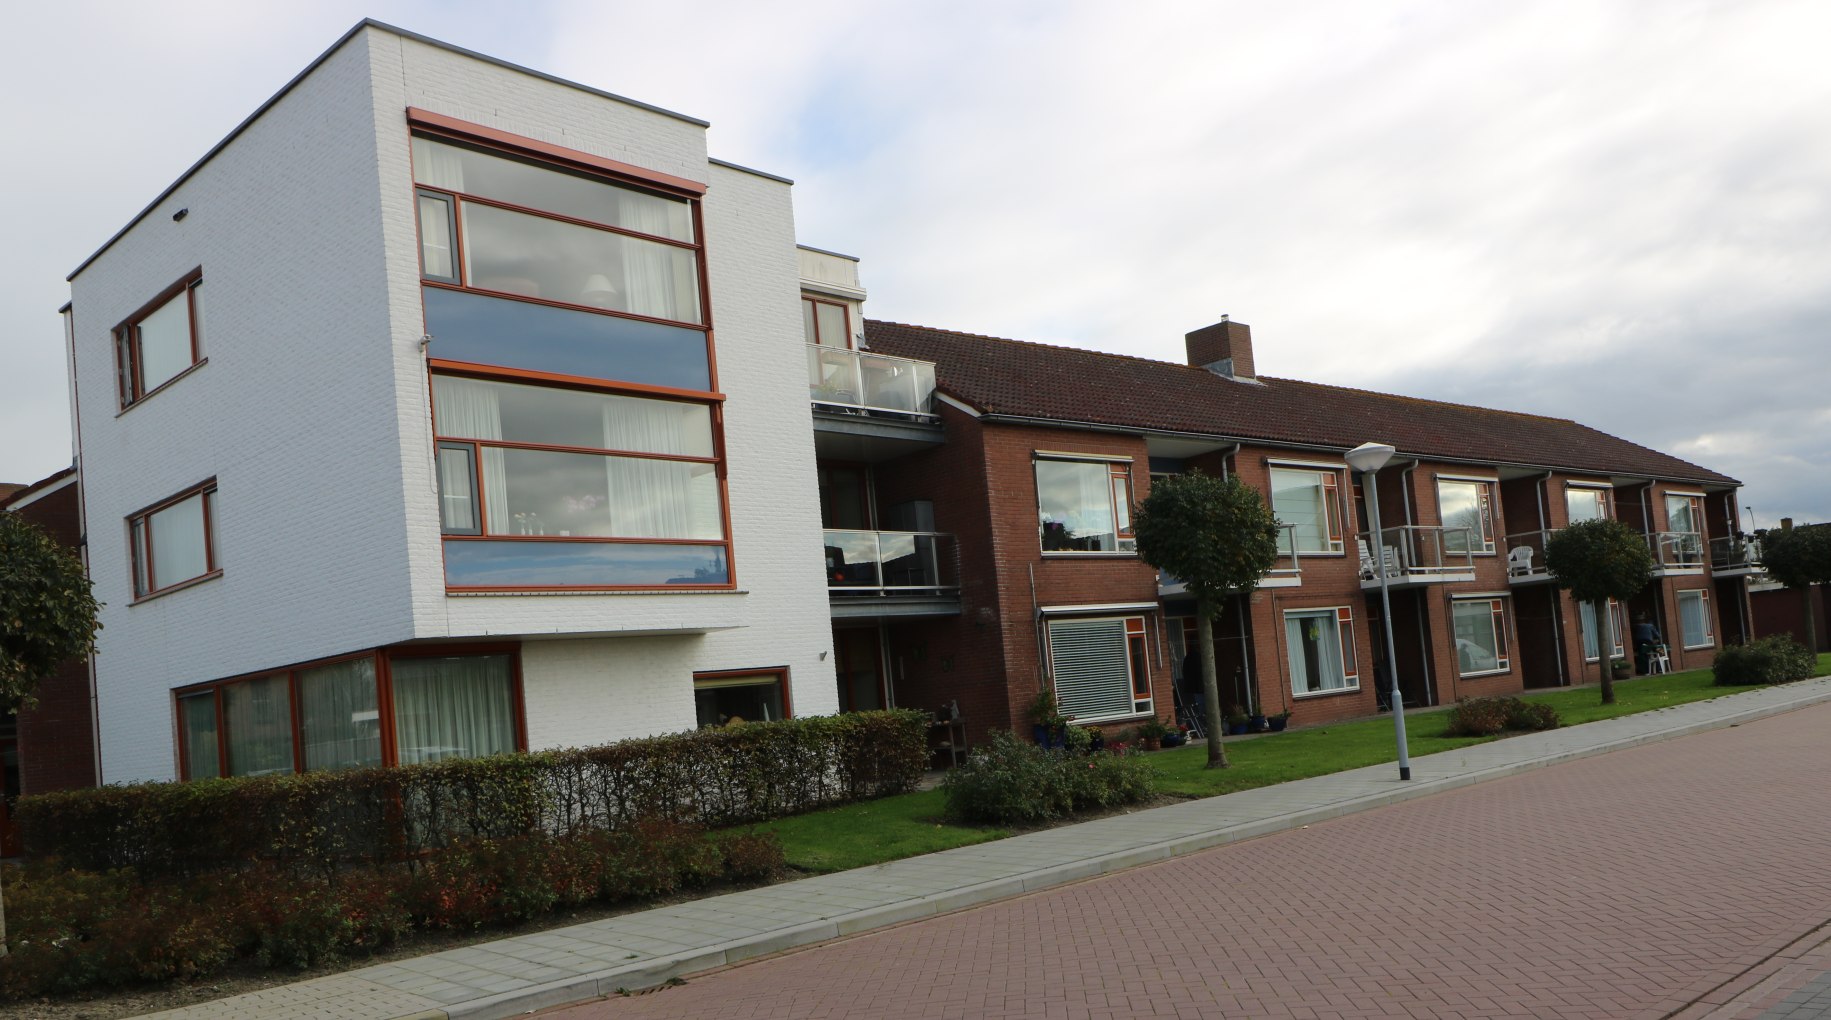 Gouwestraat 103, 4388 RB Oost-Souburg, Nederland